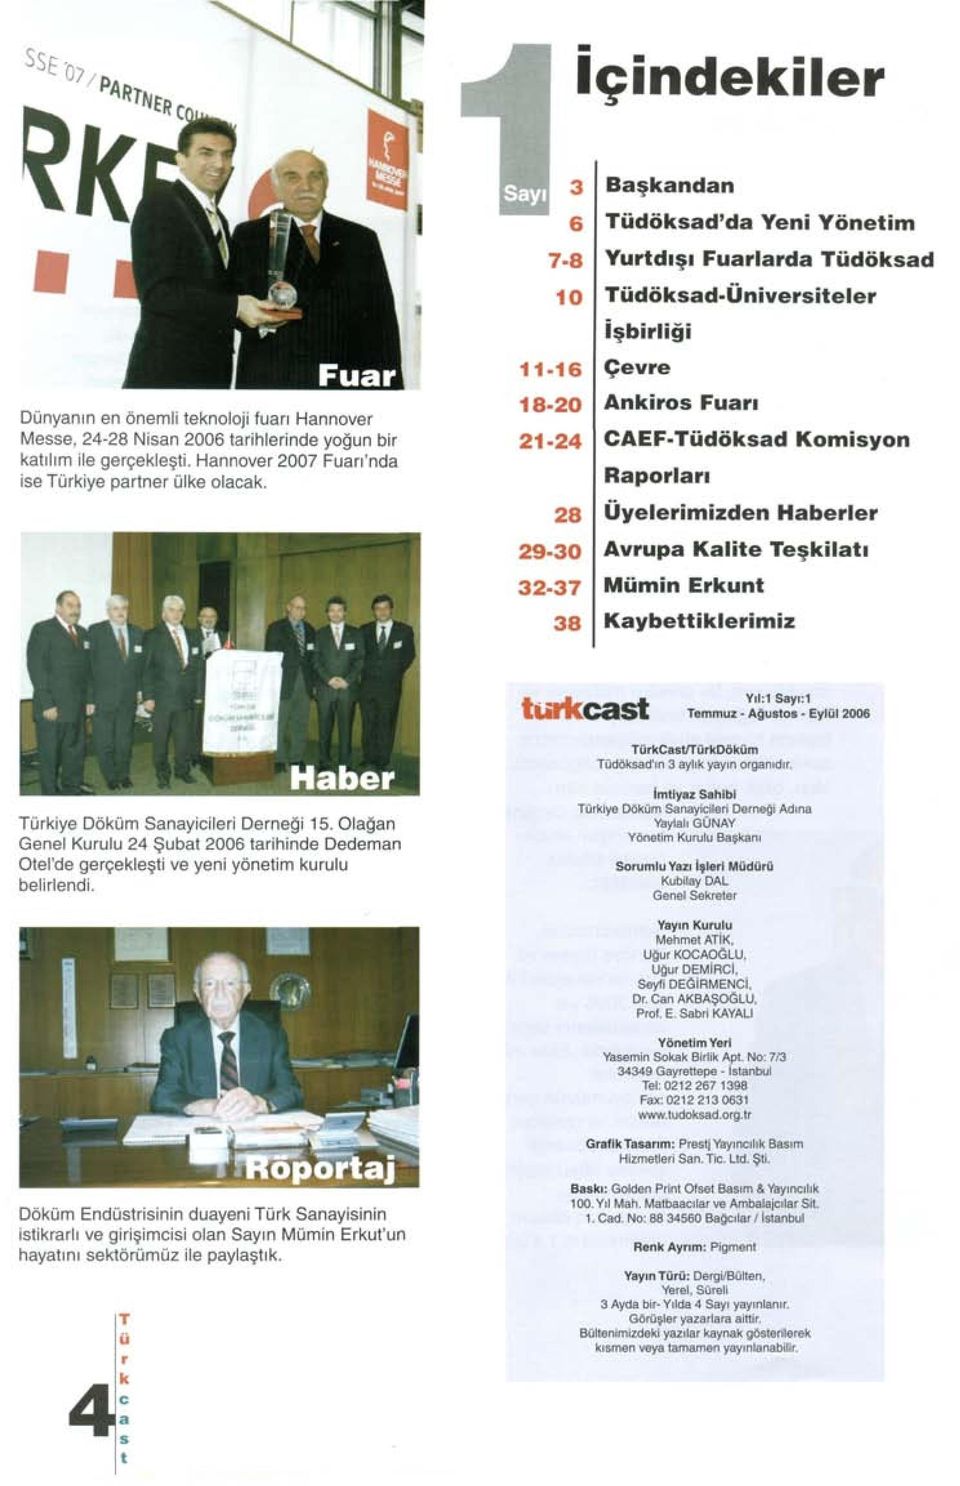 Üyelerimizden Haberler Avrupa Kalite Teşkilatı Mümin Erkunt Kaybettiklerimiz turkcast Yıl:1 Sayı:1 Temmuz - Ağustos - Eylül 2006 TürkCastATürkDöküm Tüdöksad'ın 3 aylık yayın organıdır.